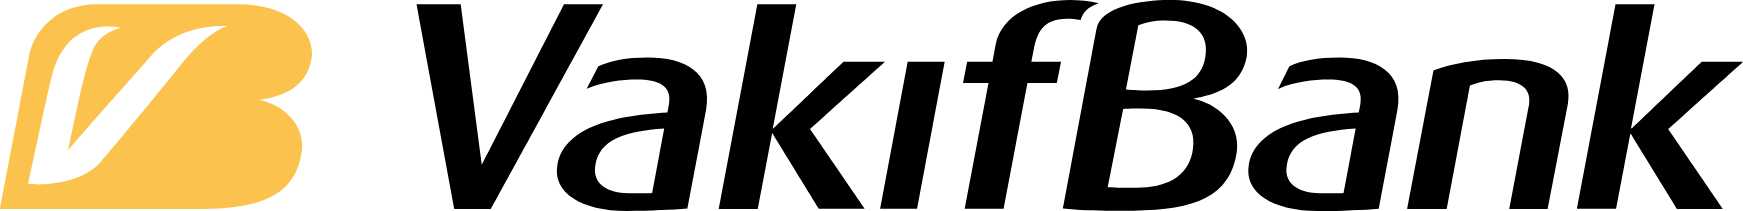 VakıfBank logo large (transparent PNG)